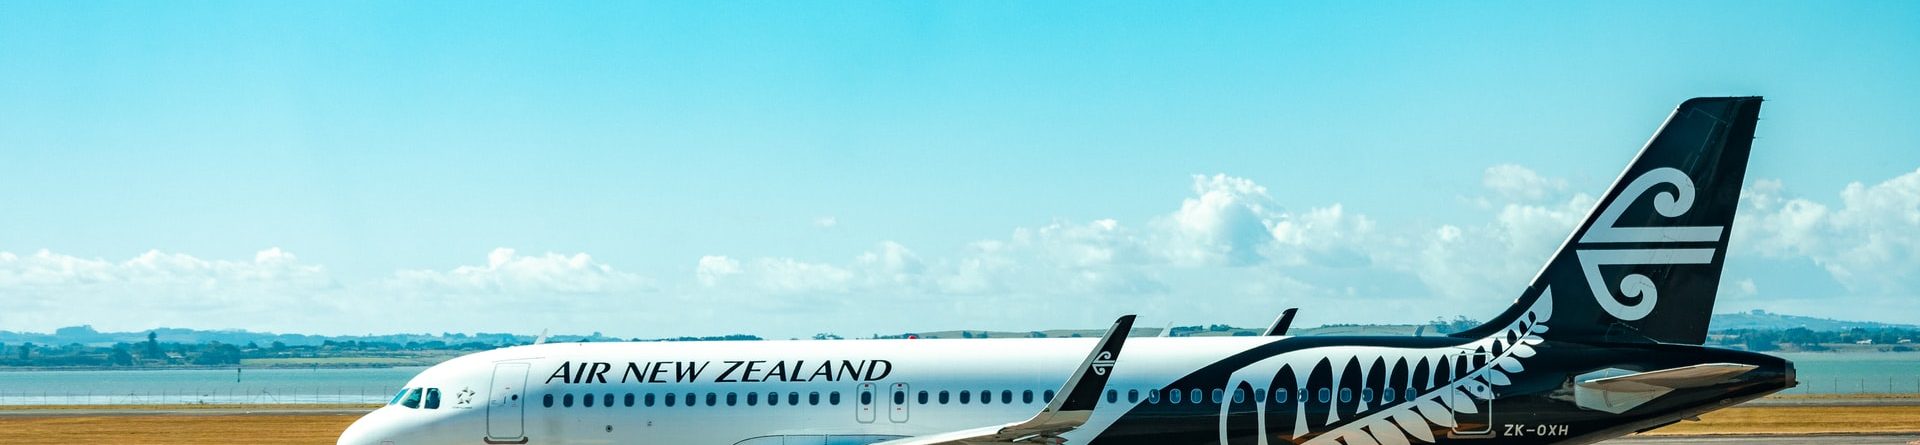 Планирование поездки в Новую Зеландию в условиях ограничений, связанных с Covid-19 